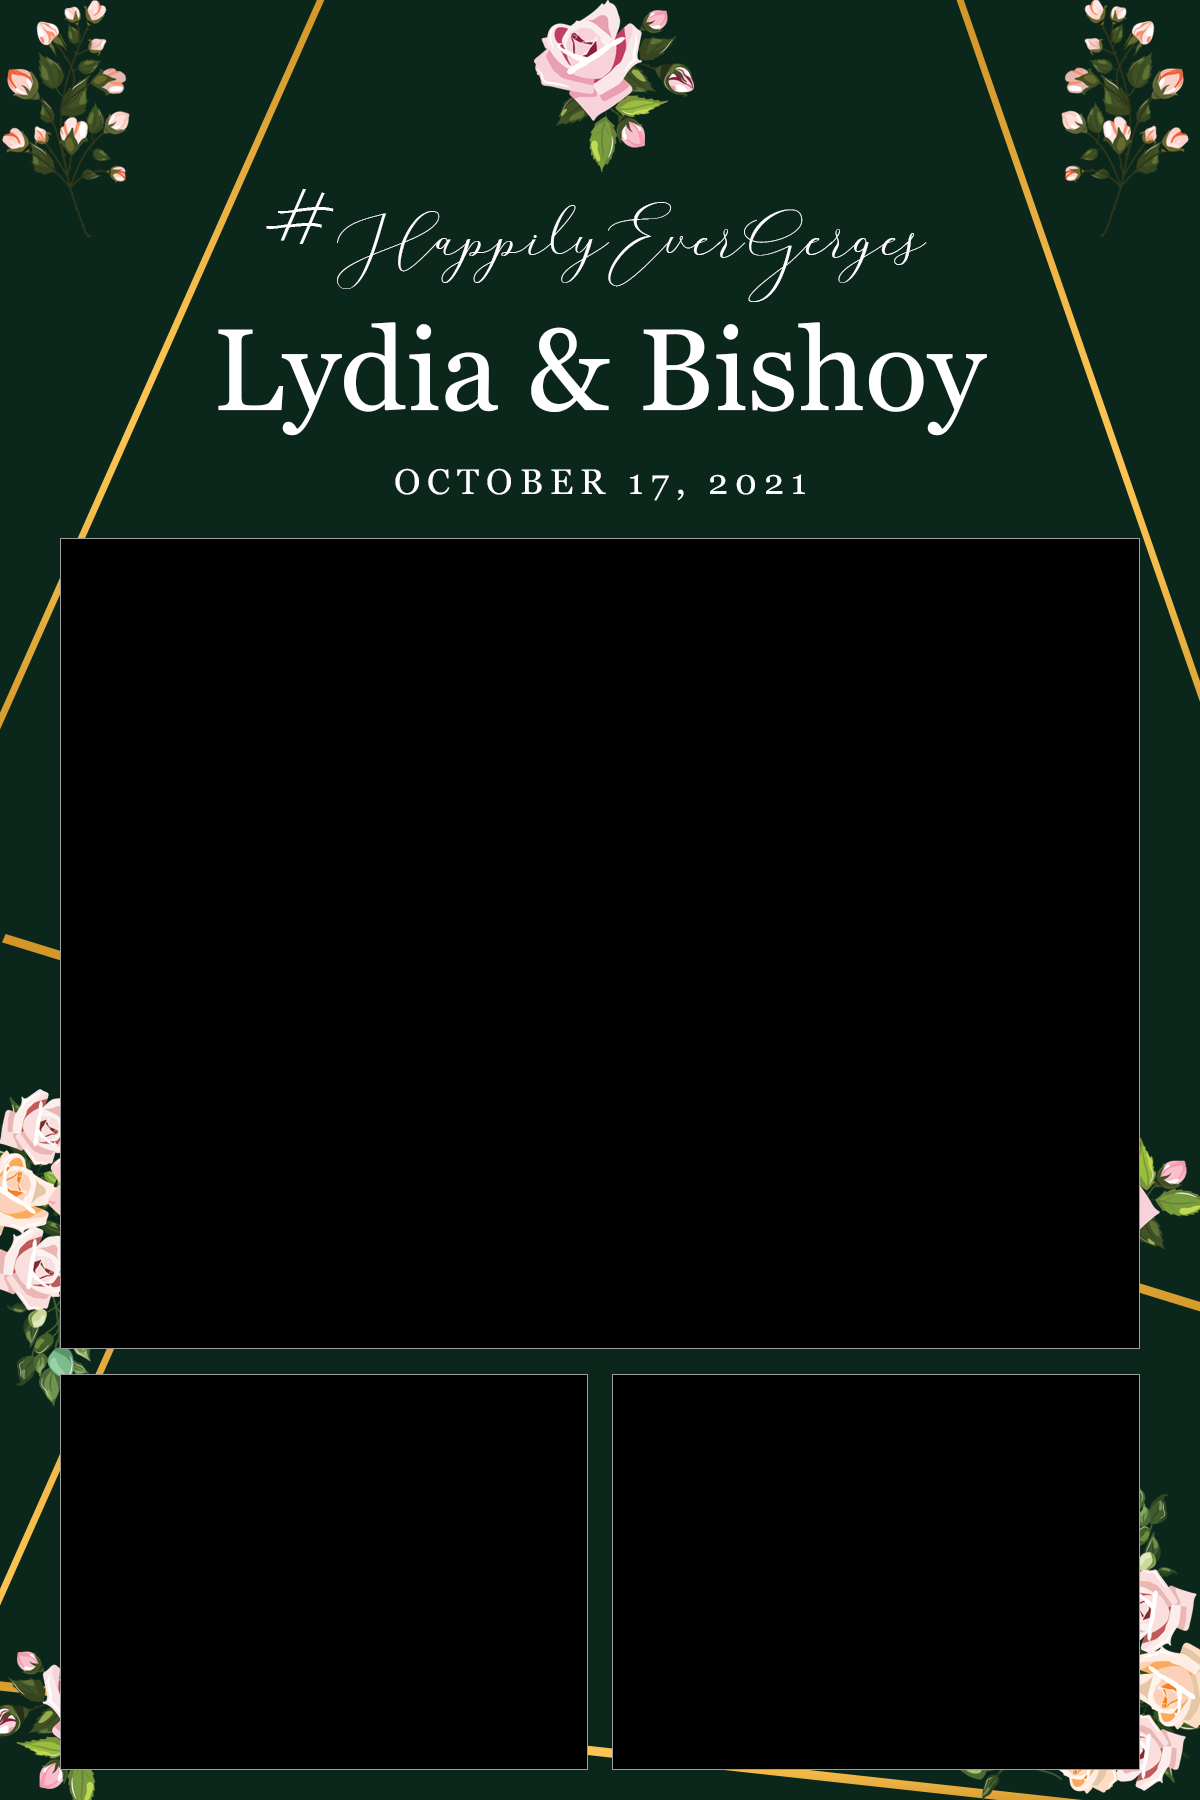 Bishoy+Lydia_4